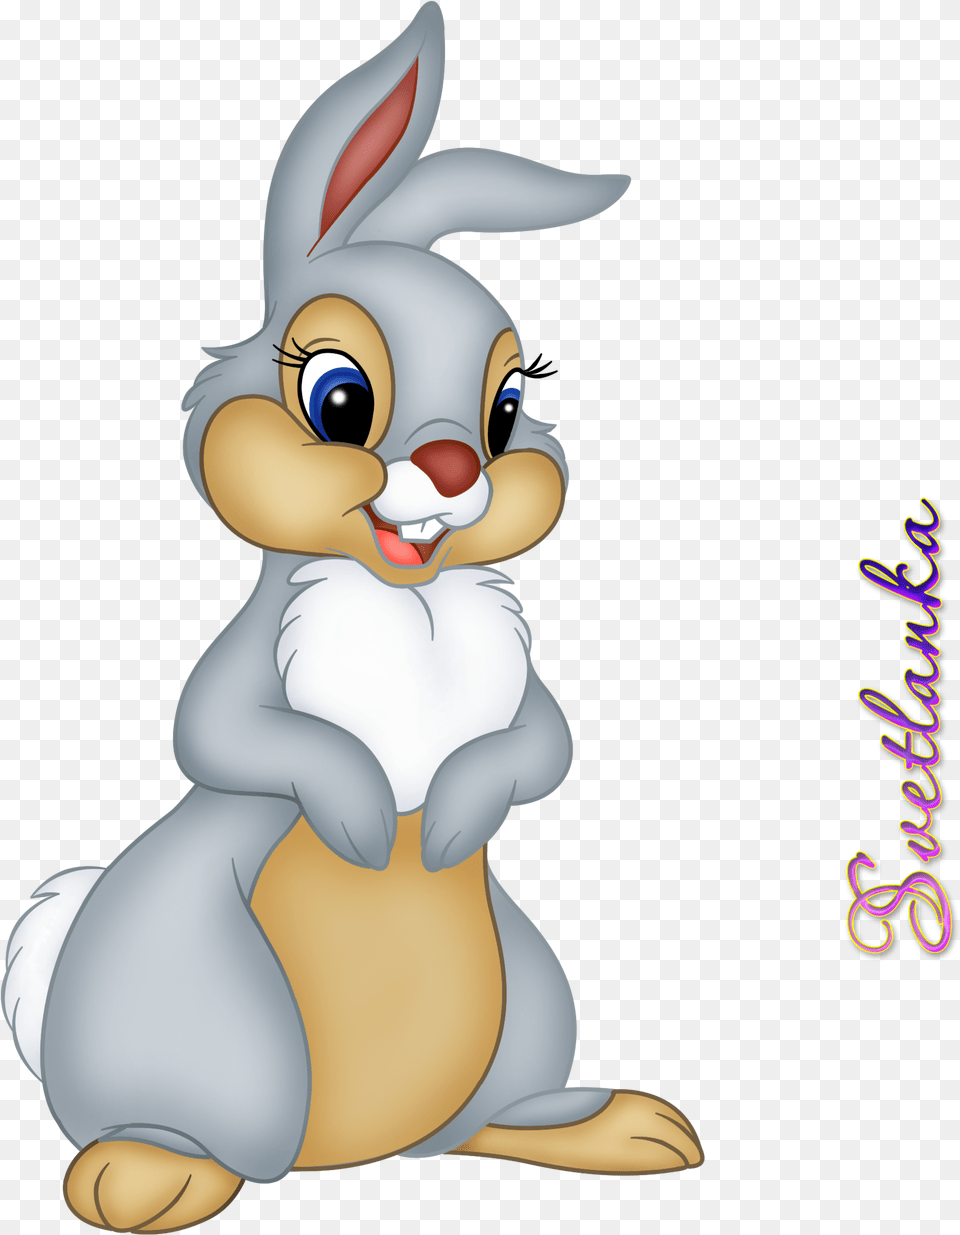 Transparent Clipart Of Bunnies Cartoon Bambi Disney Bunny, Nature, Outdoors, Snow, Snowman Png